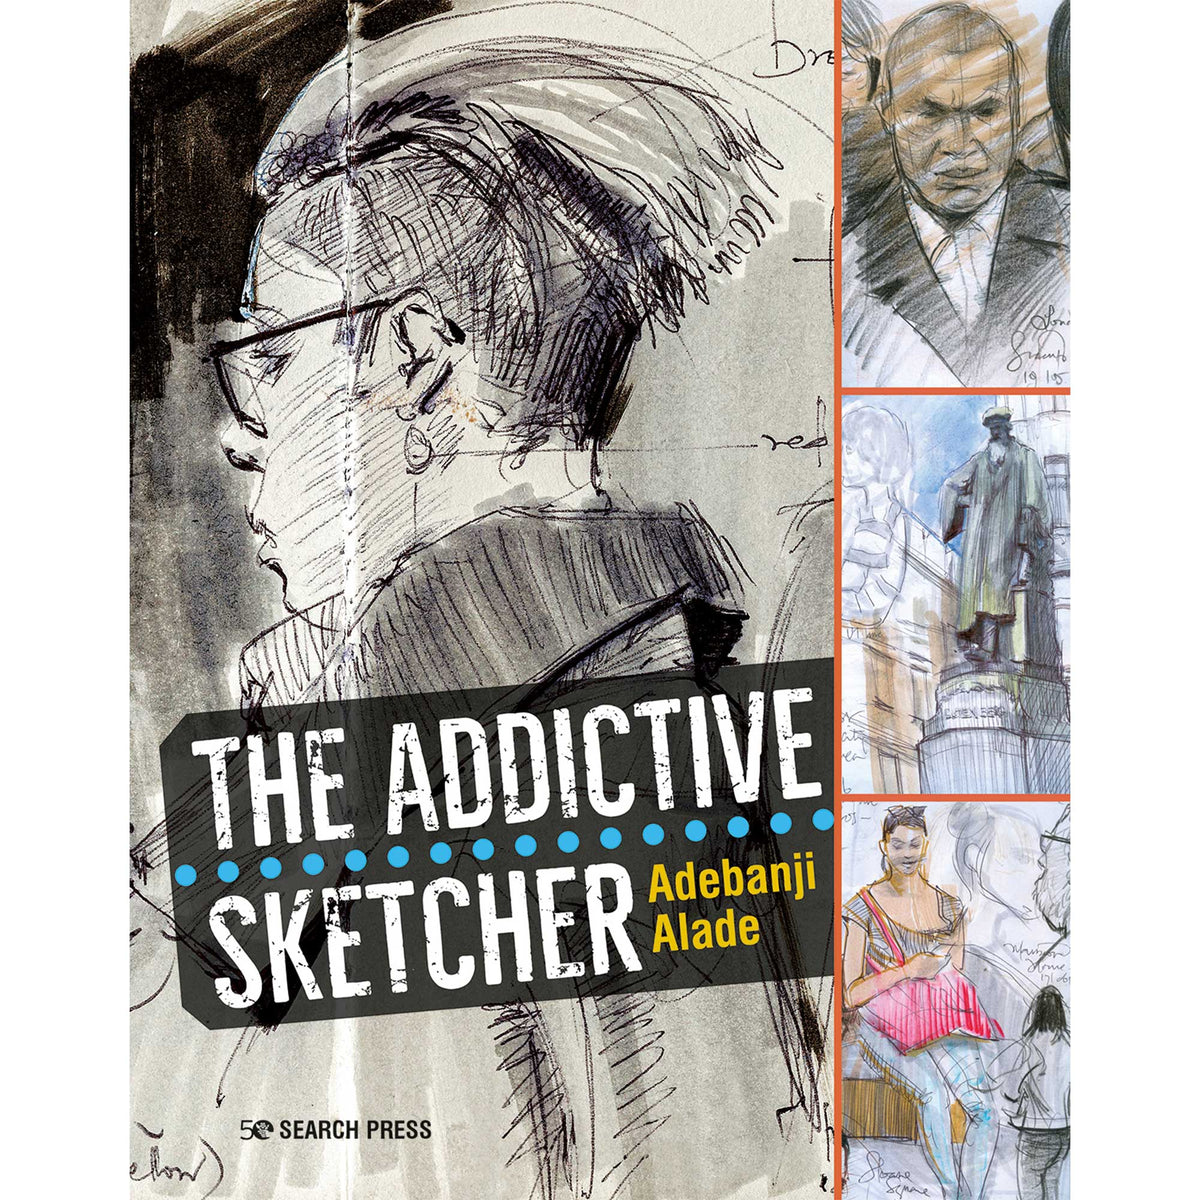 The Addictive Sketcher - A. Alade